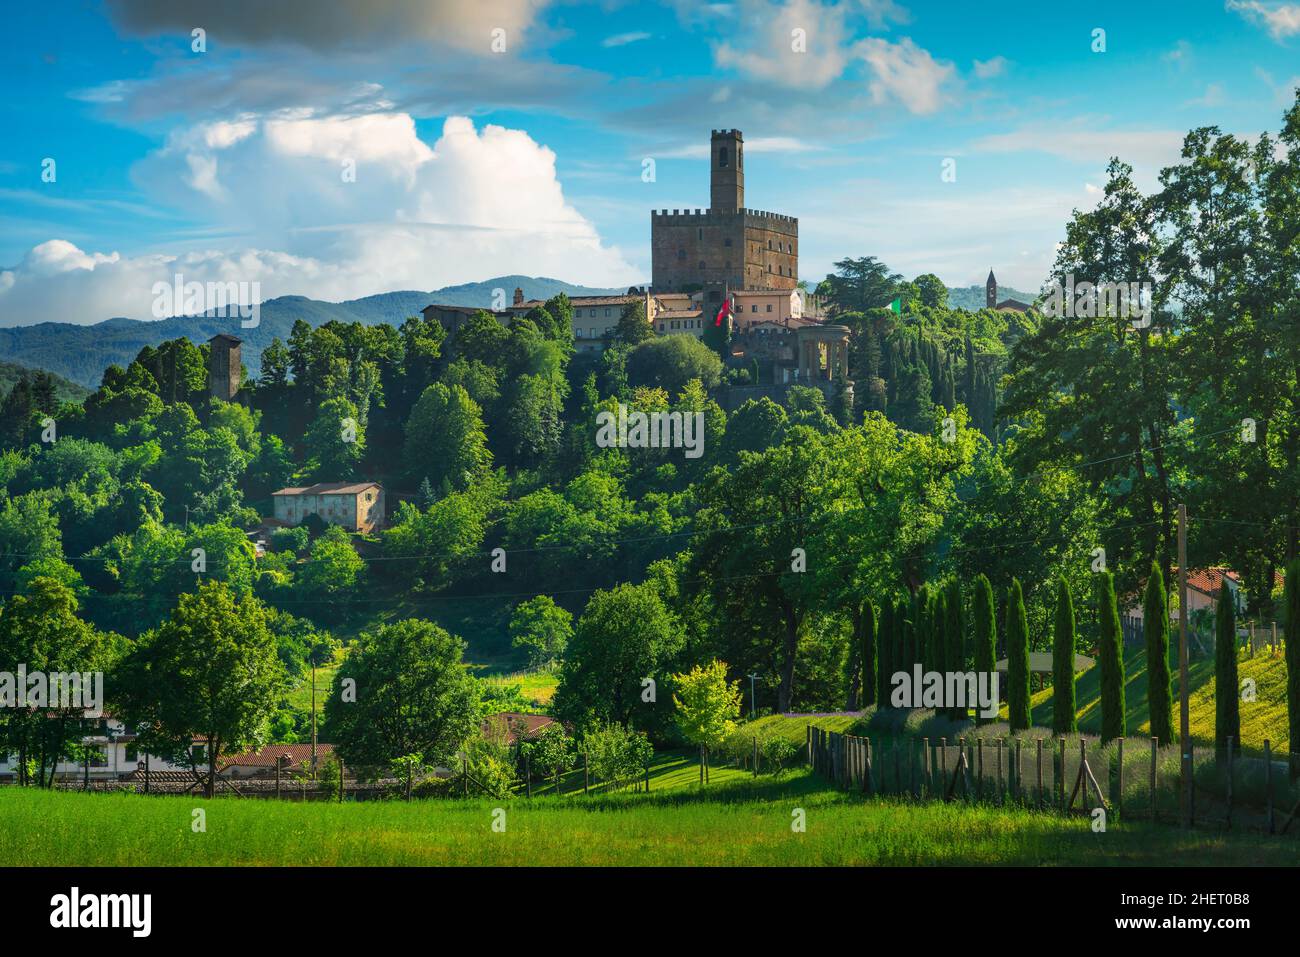 Pueblo medieval de Poppi y vistas al castillo. Casentino, provincia de Arezzo, región de Toscana, Italia, Europa. Foto de stock